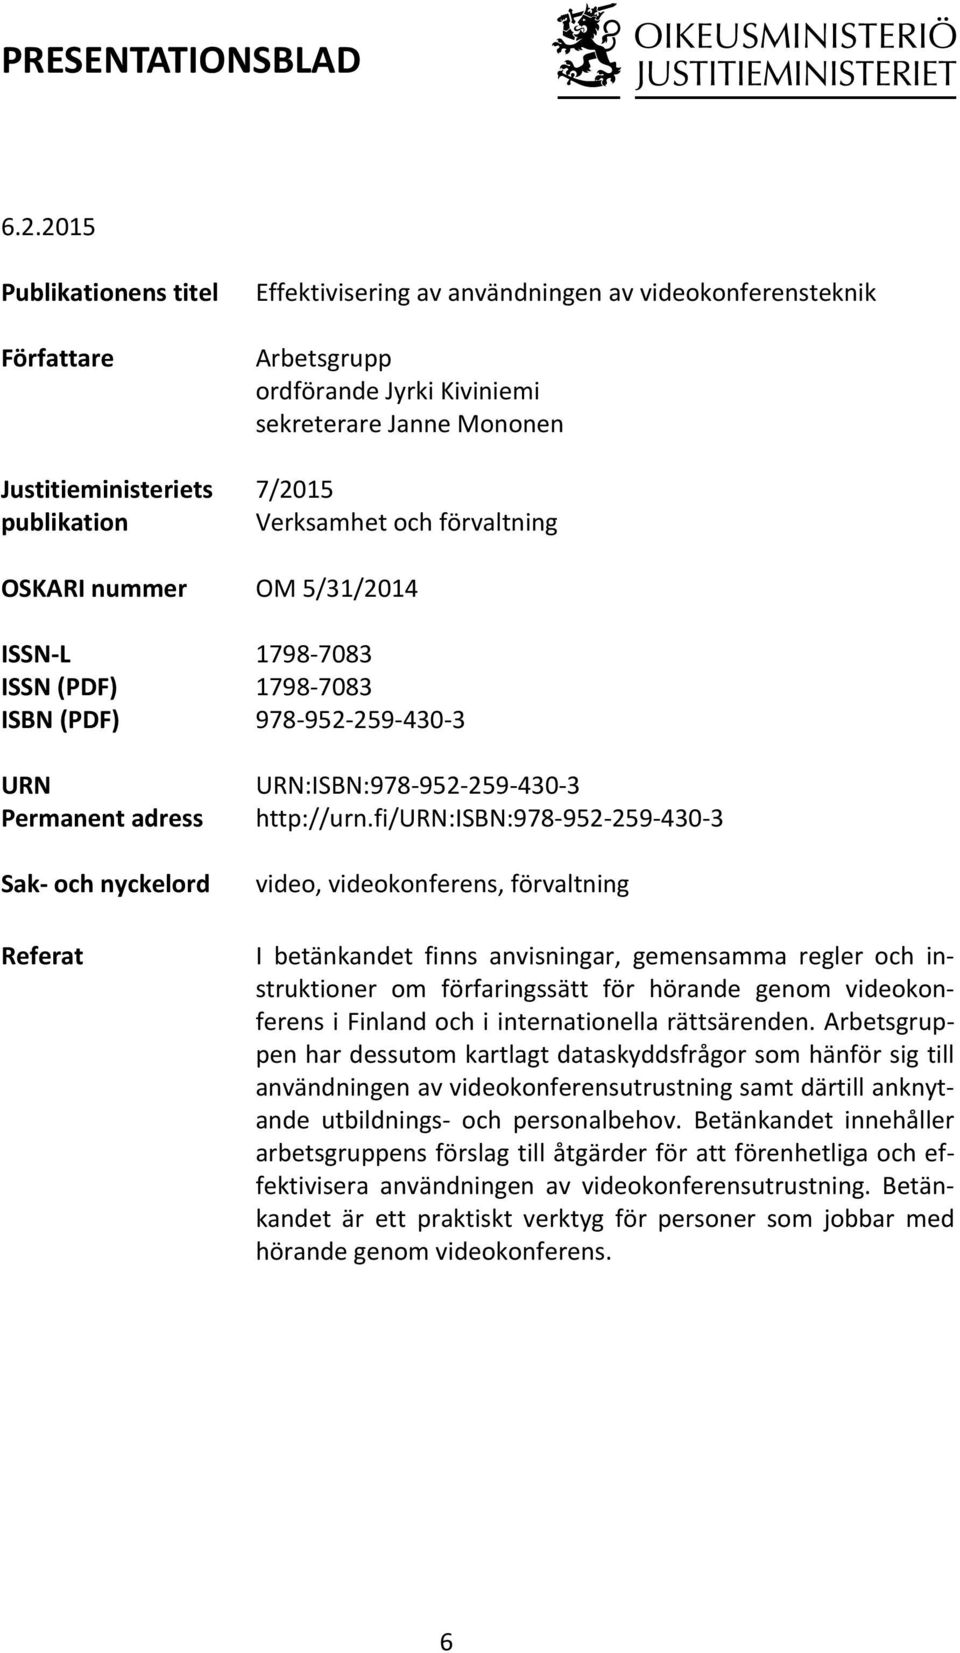 videokonferensteknik Arbetsgrupp ordförande Jyrki Kiviniemi sekreterare Janne Mononen 7/2015 Verksamhet och förvaltning OM 5/31/2014 1798-7083 1798-7083 978-952- 259-430- 3 URN:ISBN:978-952- 259-430-